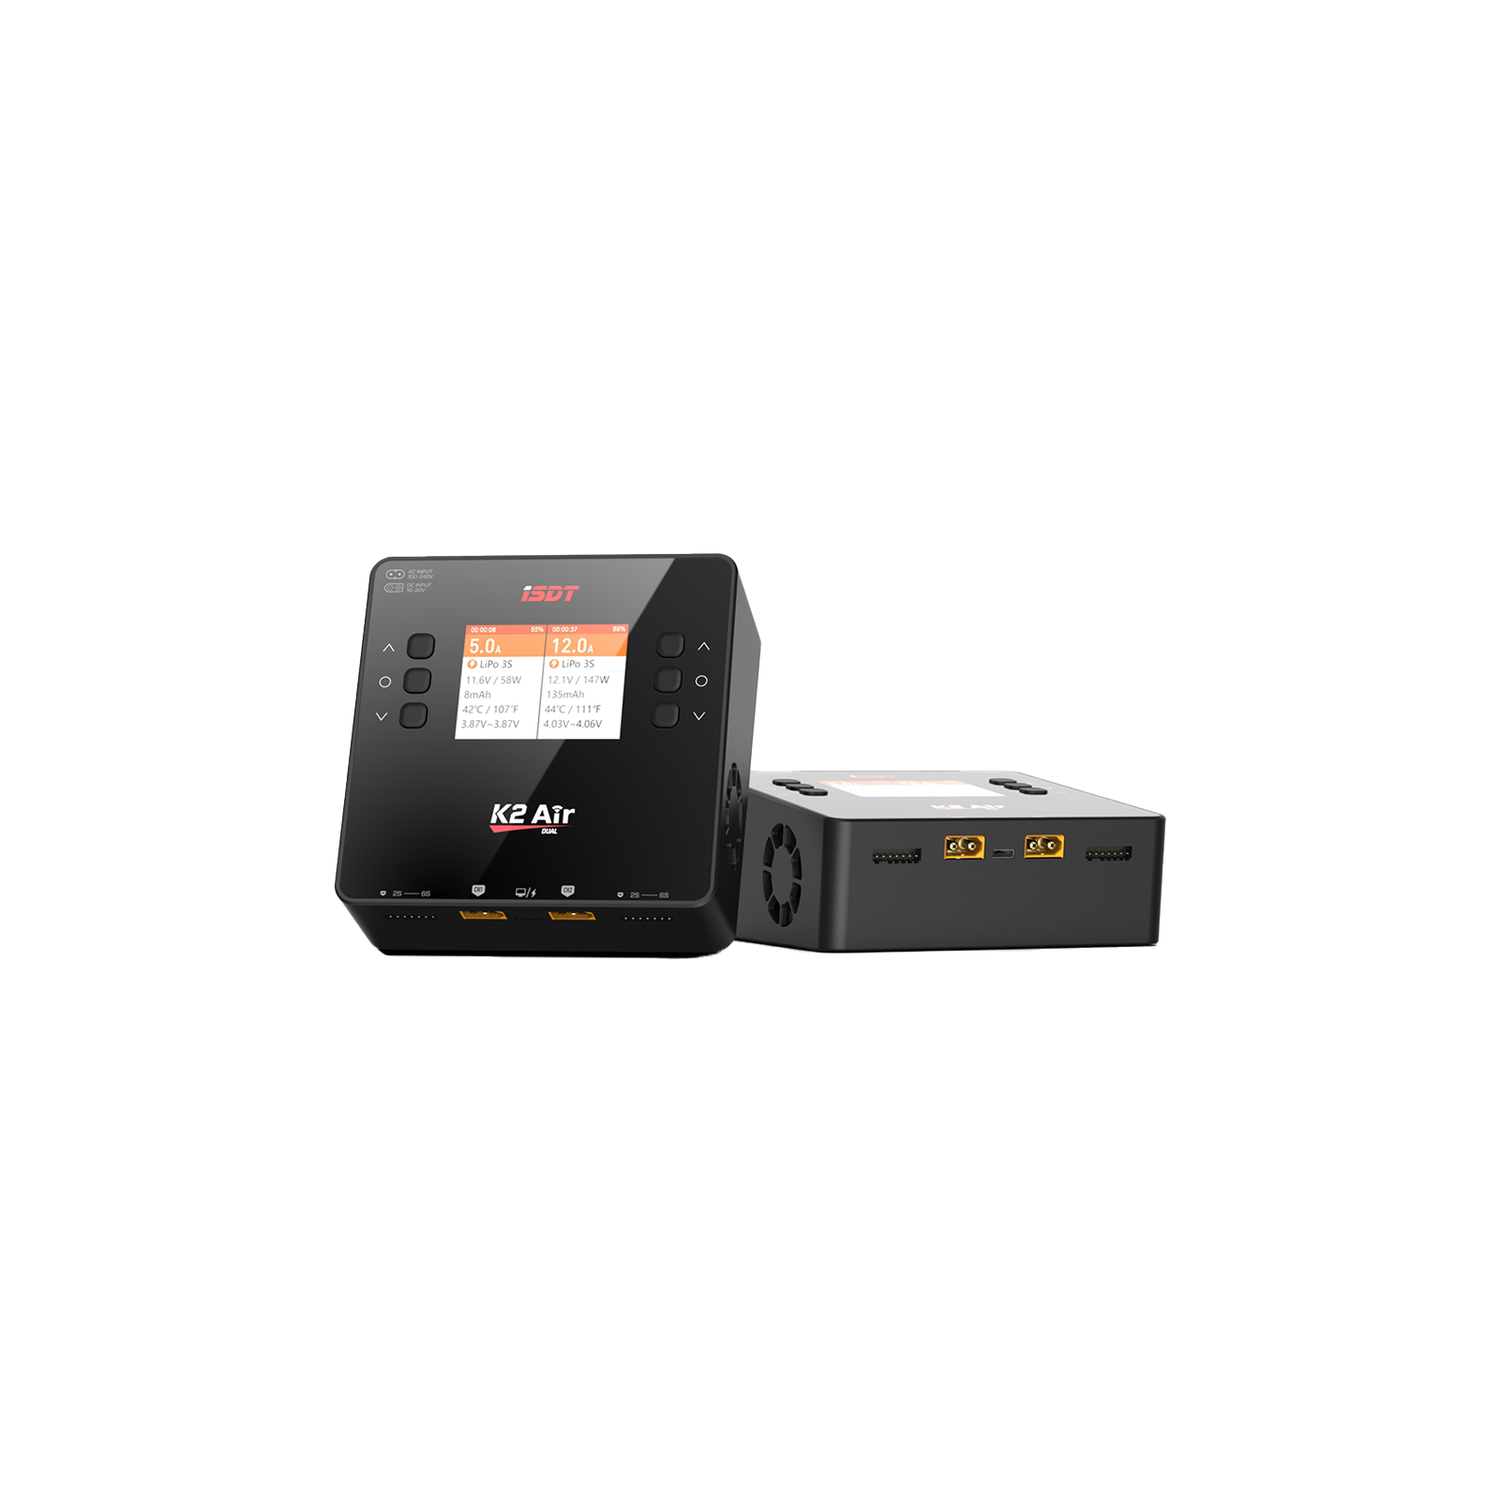 K2 Air Bluetooth Remote Control Lipo Charger, AC / DC 200W / 500WX2 20A Déchargement / chargeur de solde intelligent